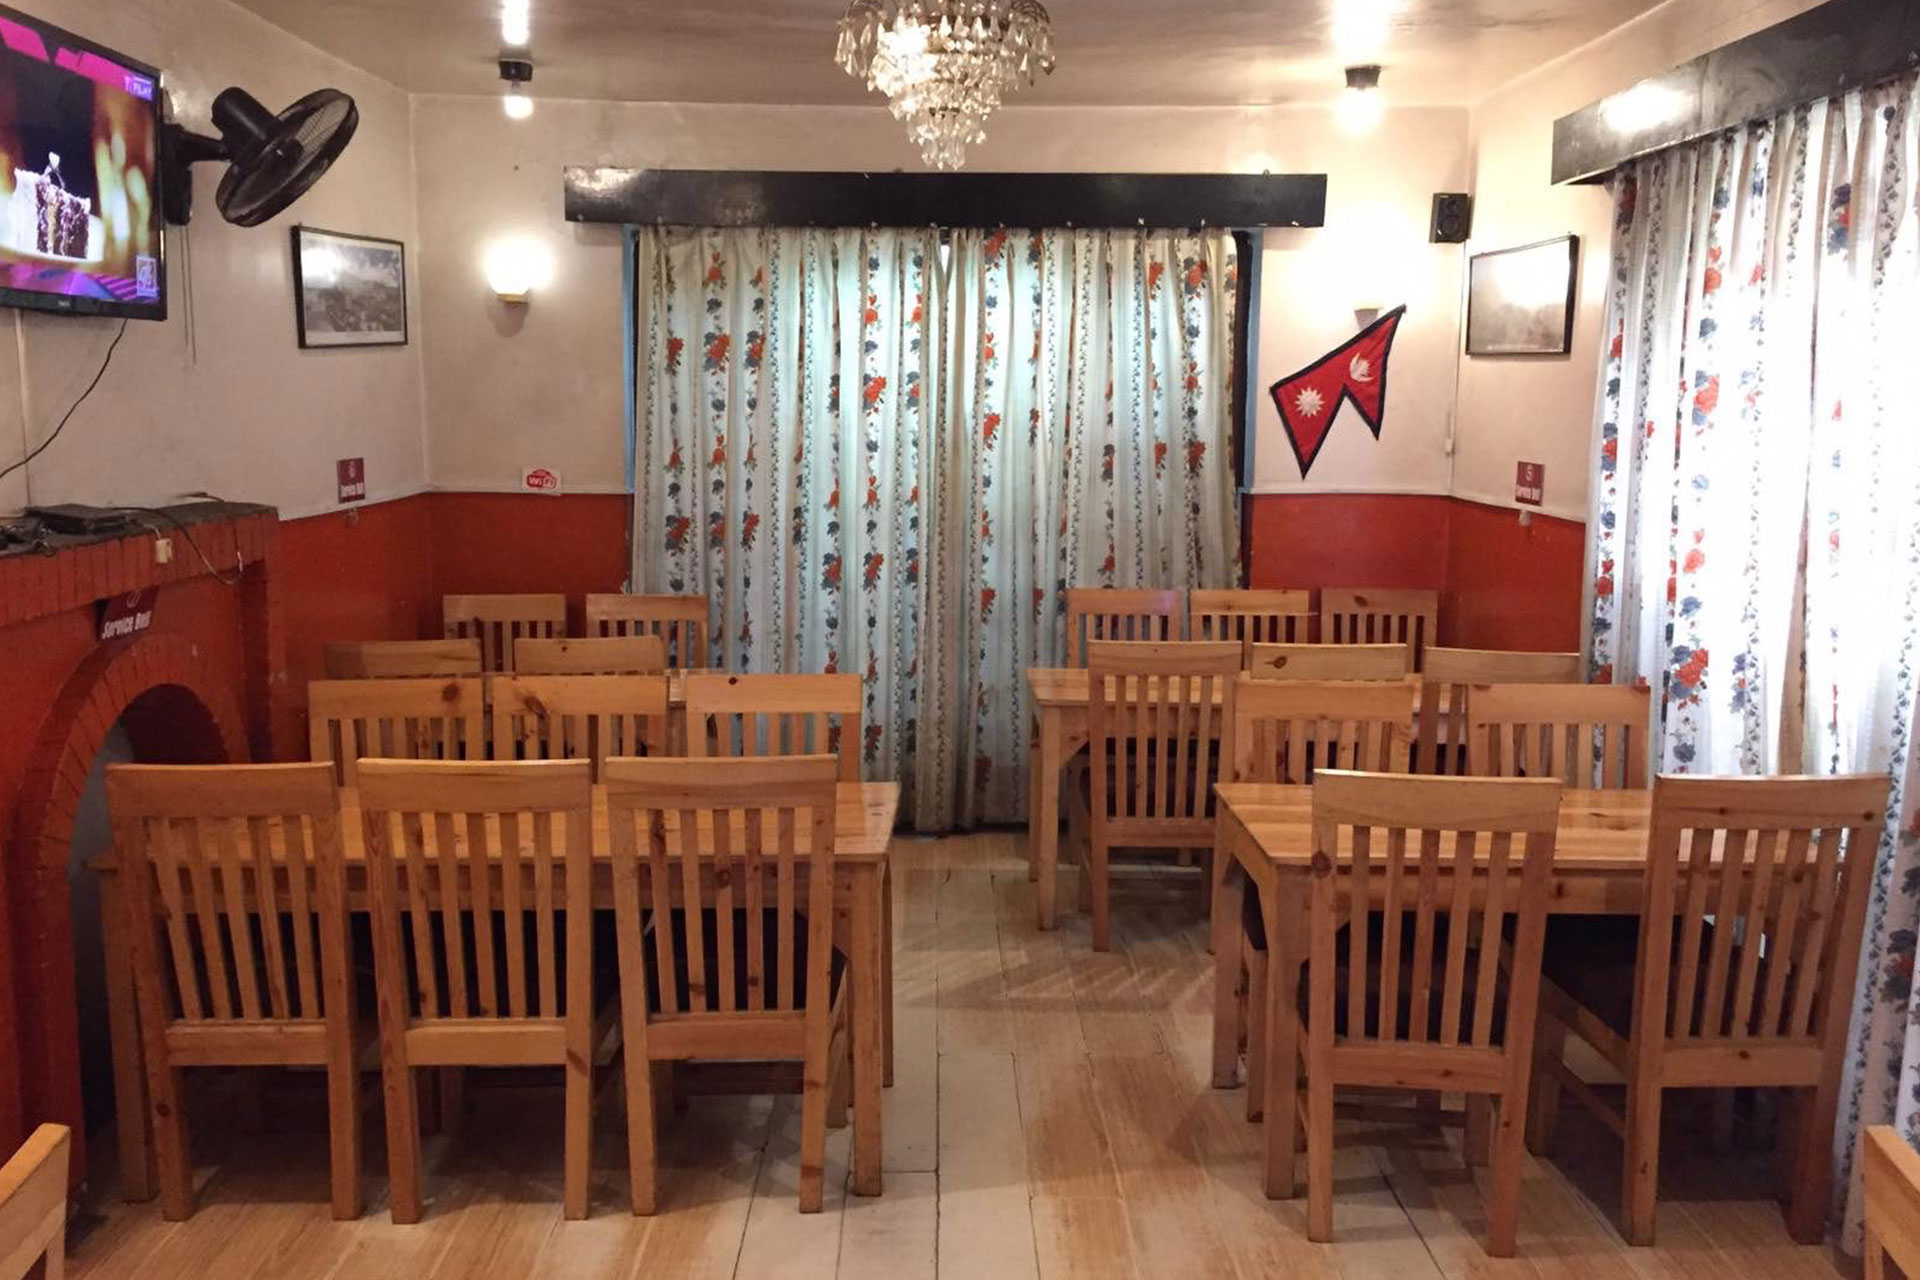 T3 Thakali Bhanchha Ghar & Sekuwa Cafe